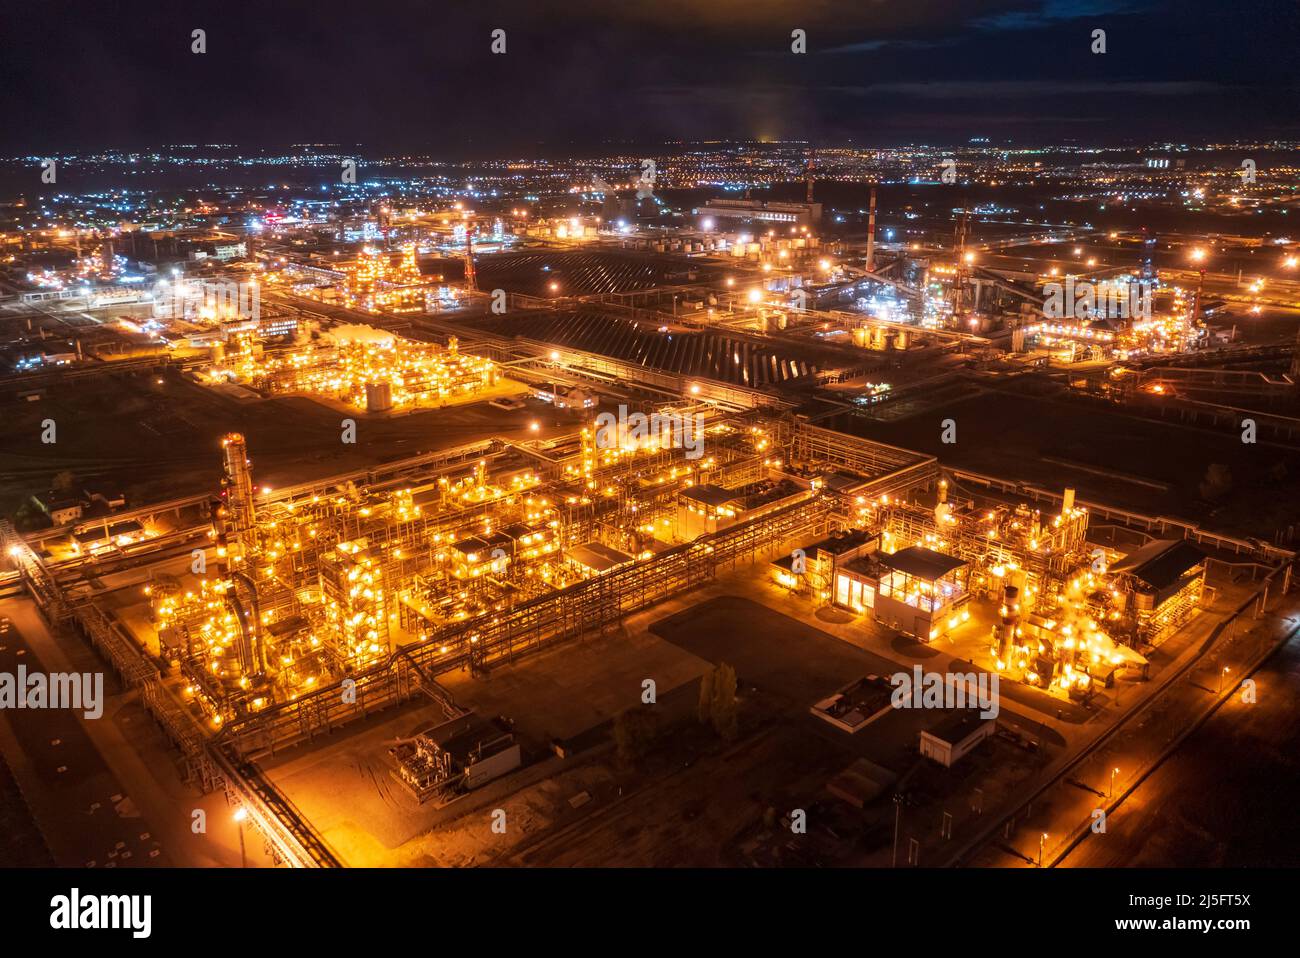 Eine allgemeine Ansicht zeigt die Ölraffinerie der Lukoil-Gesellschaft in Wolgograd, Russland, 22. April 2022. Bild aufgenommen am 22. April 2022. Mit einer Drohne aufgenommen. REUTERS/REUTERS-FOTOGRAF Stockfoto